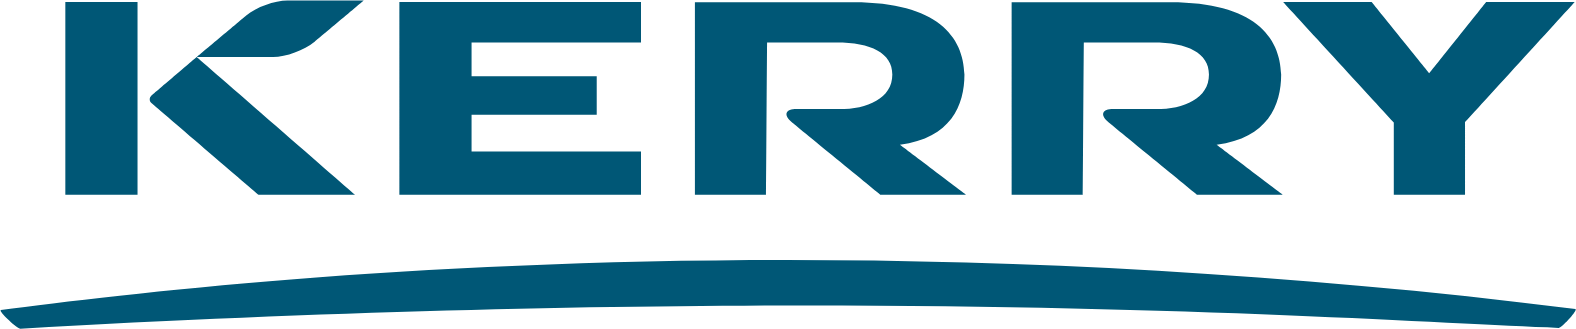 Kerry Group logo large (transparent PNG)